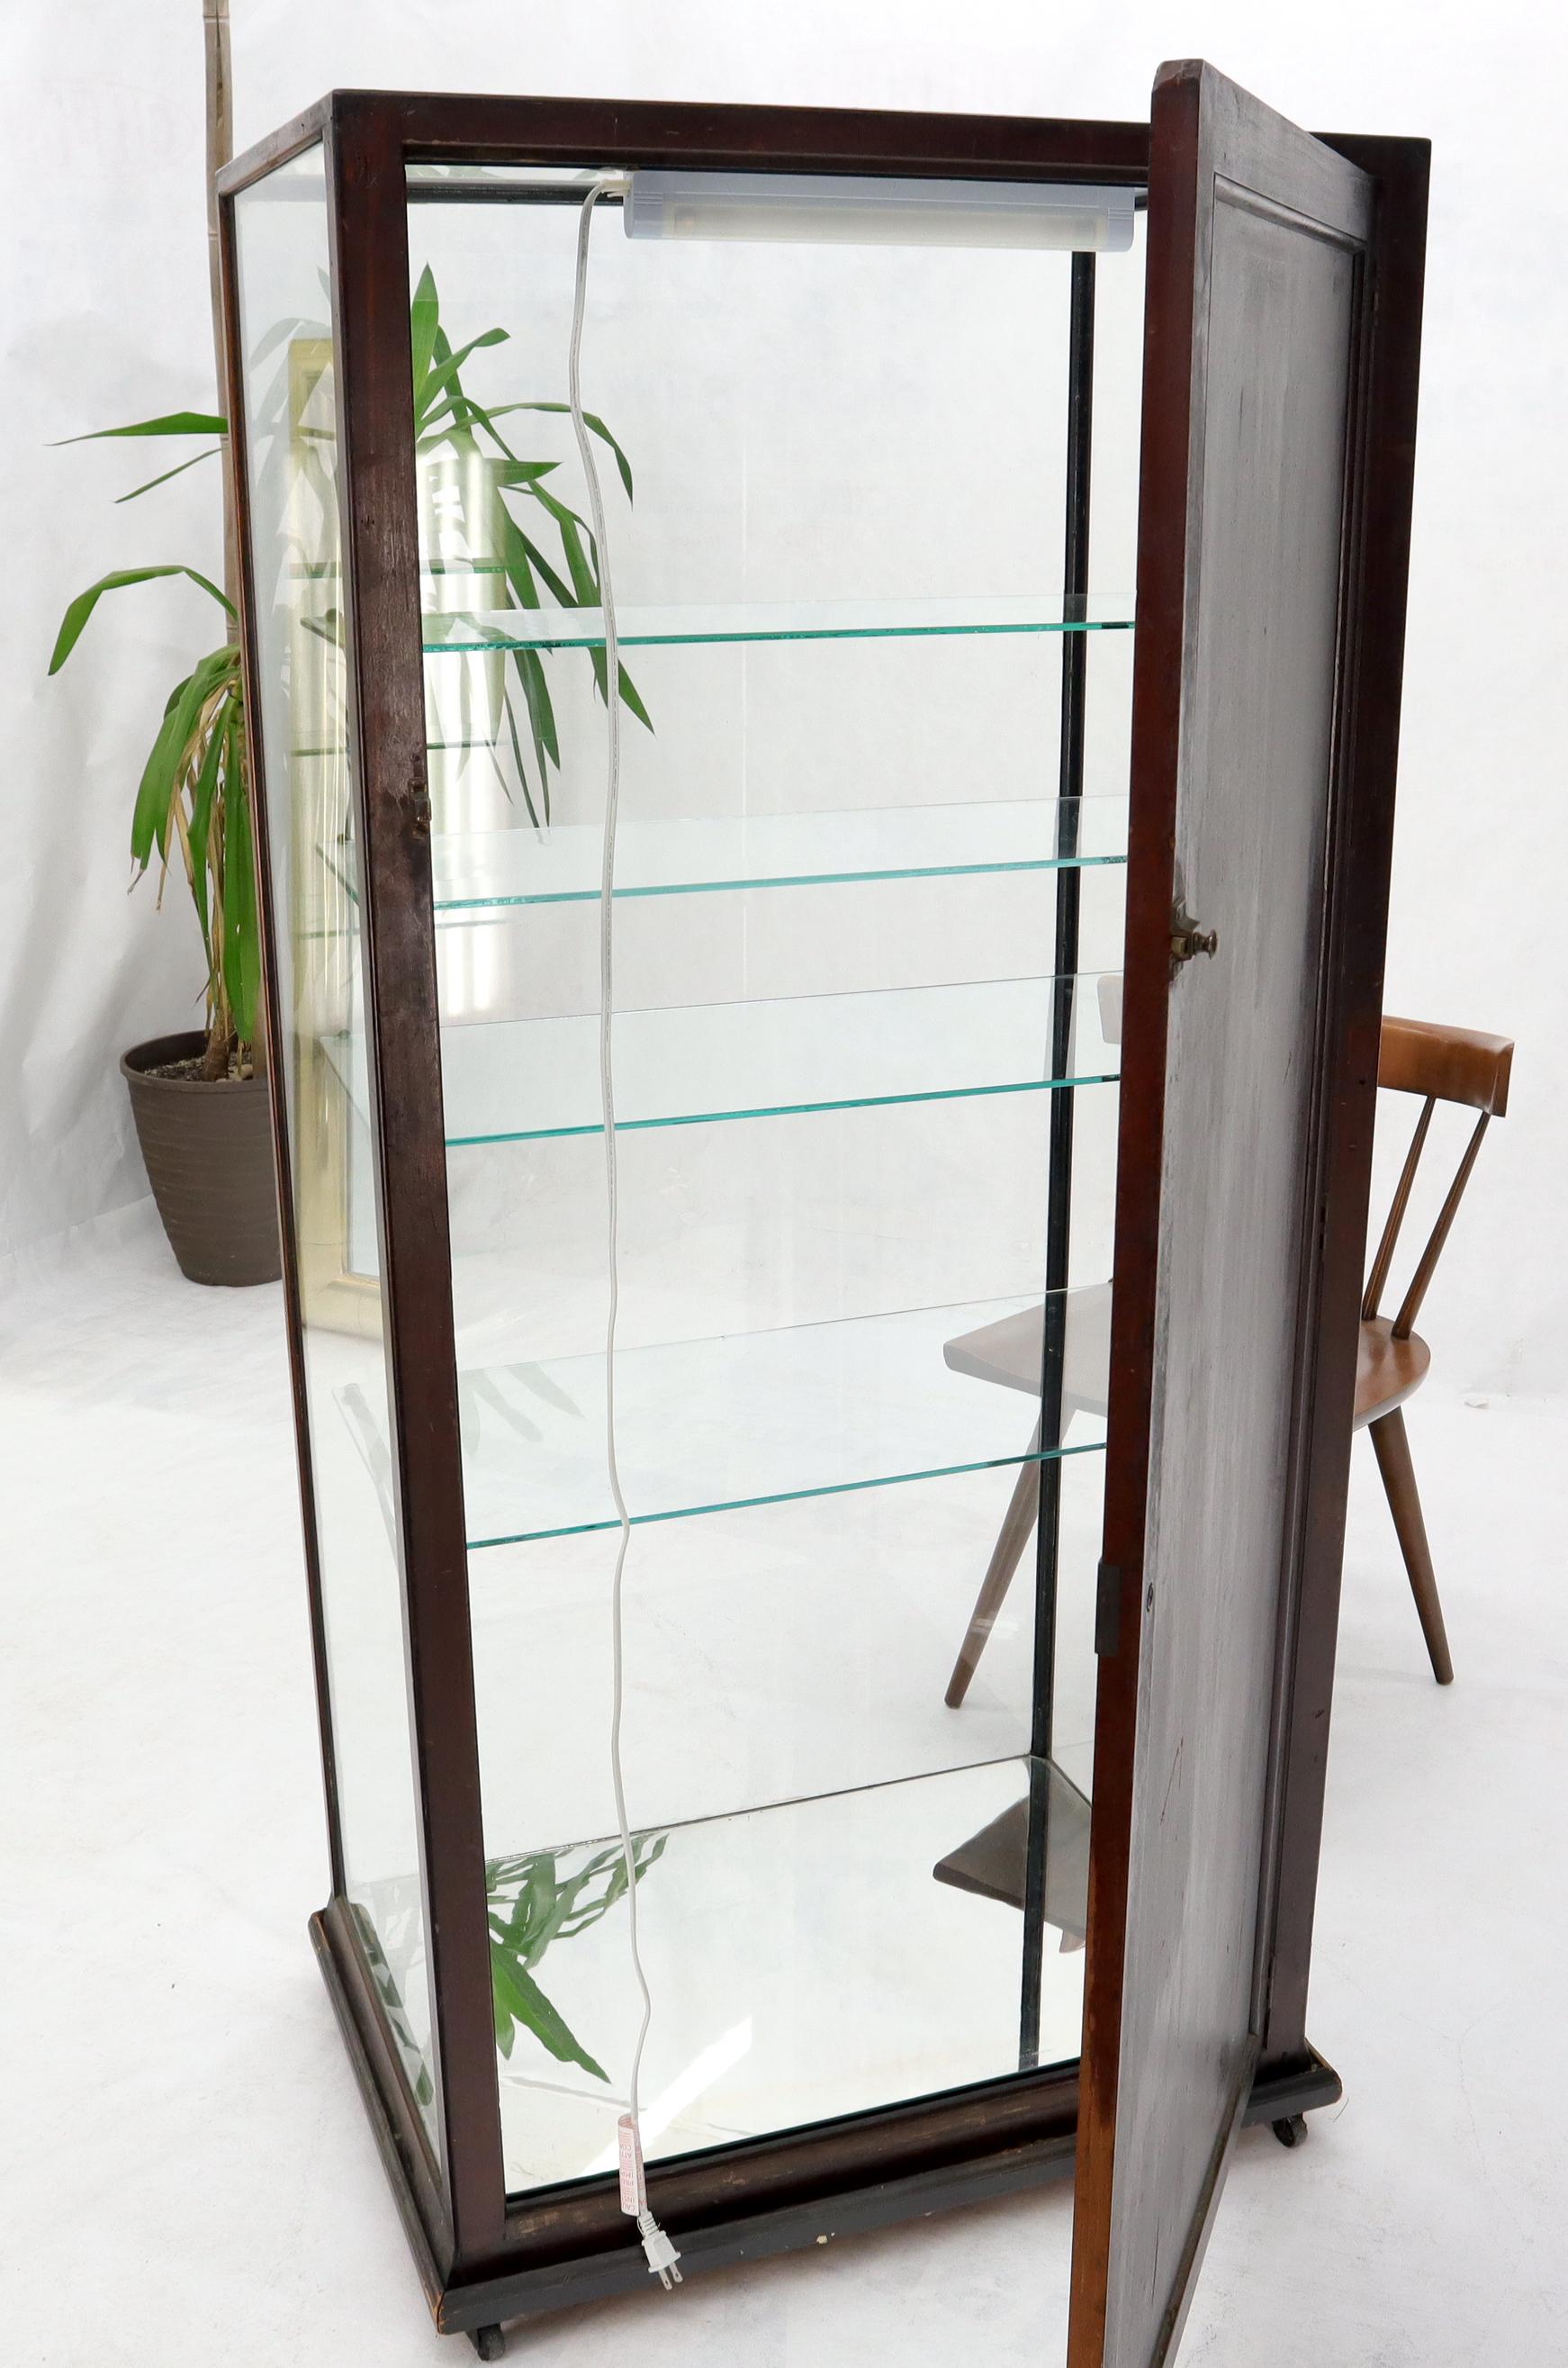 Armature en chêne massif, étagères en verre réglables, vitrine en forme de boîte, vitrine curio.